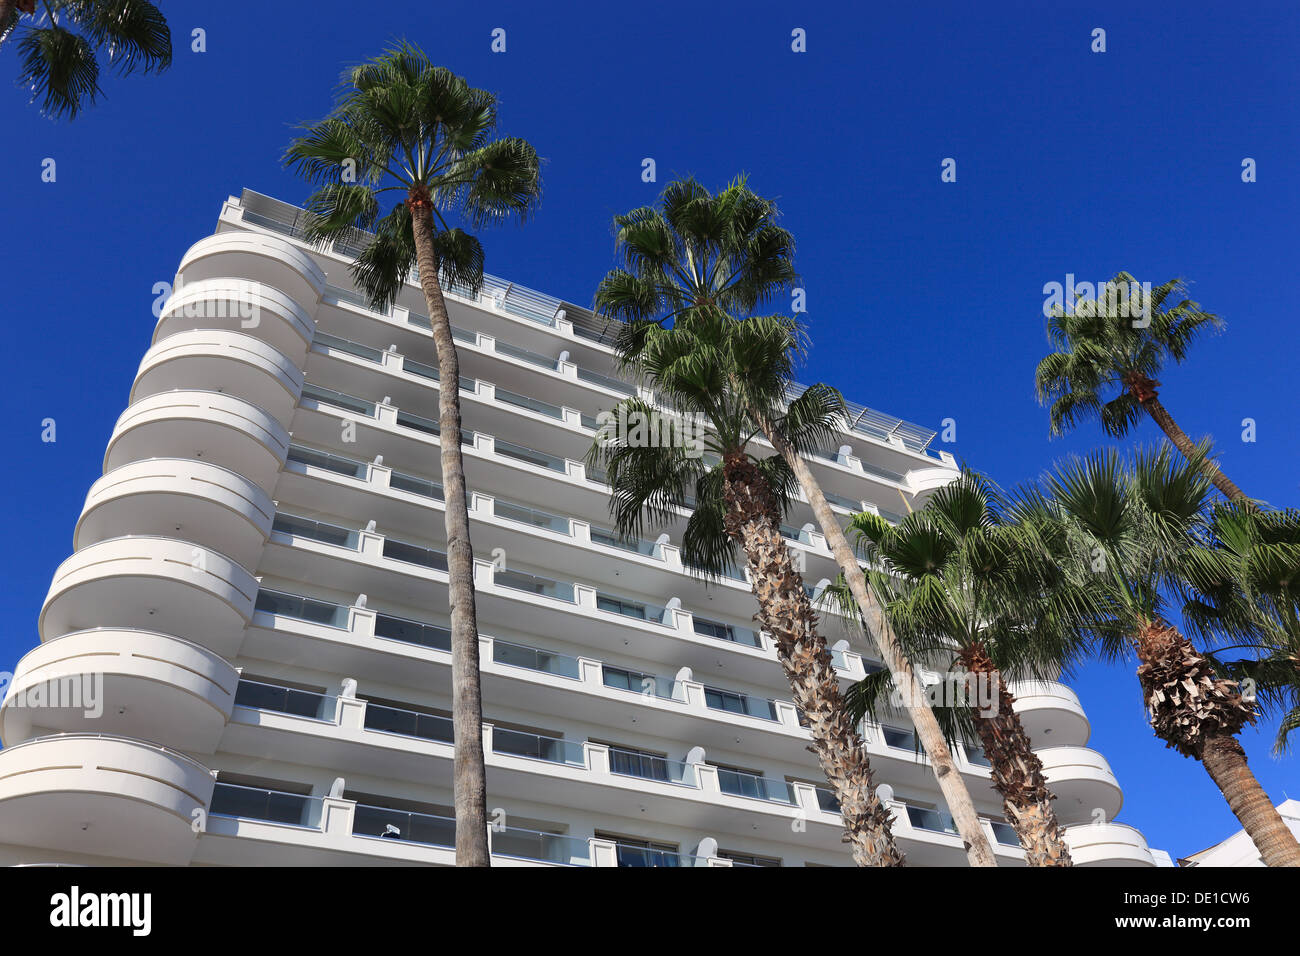 Chipre, Larnaca, hoteles, edificios residenciales, palmeras Foto de stock